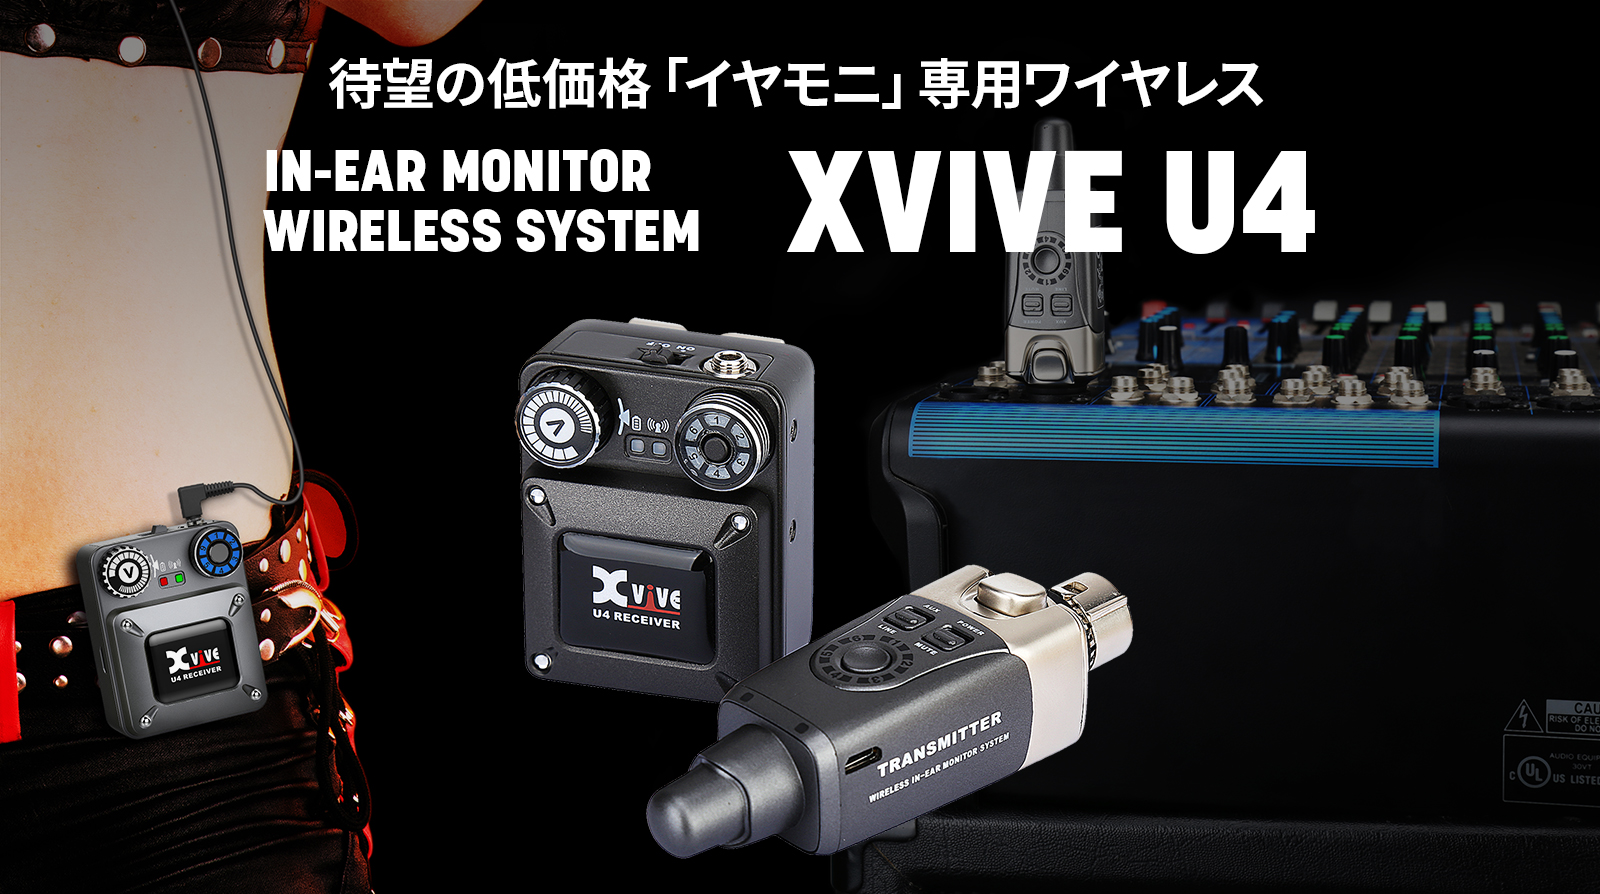 xvive U4 インイヤーモニター ワイヤレスシステム イヤモニ - 東京都の楽器